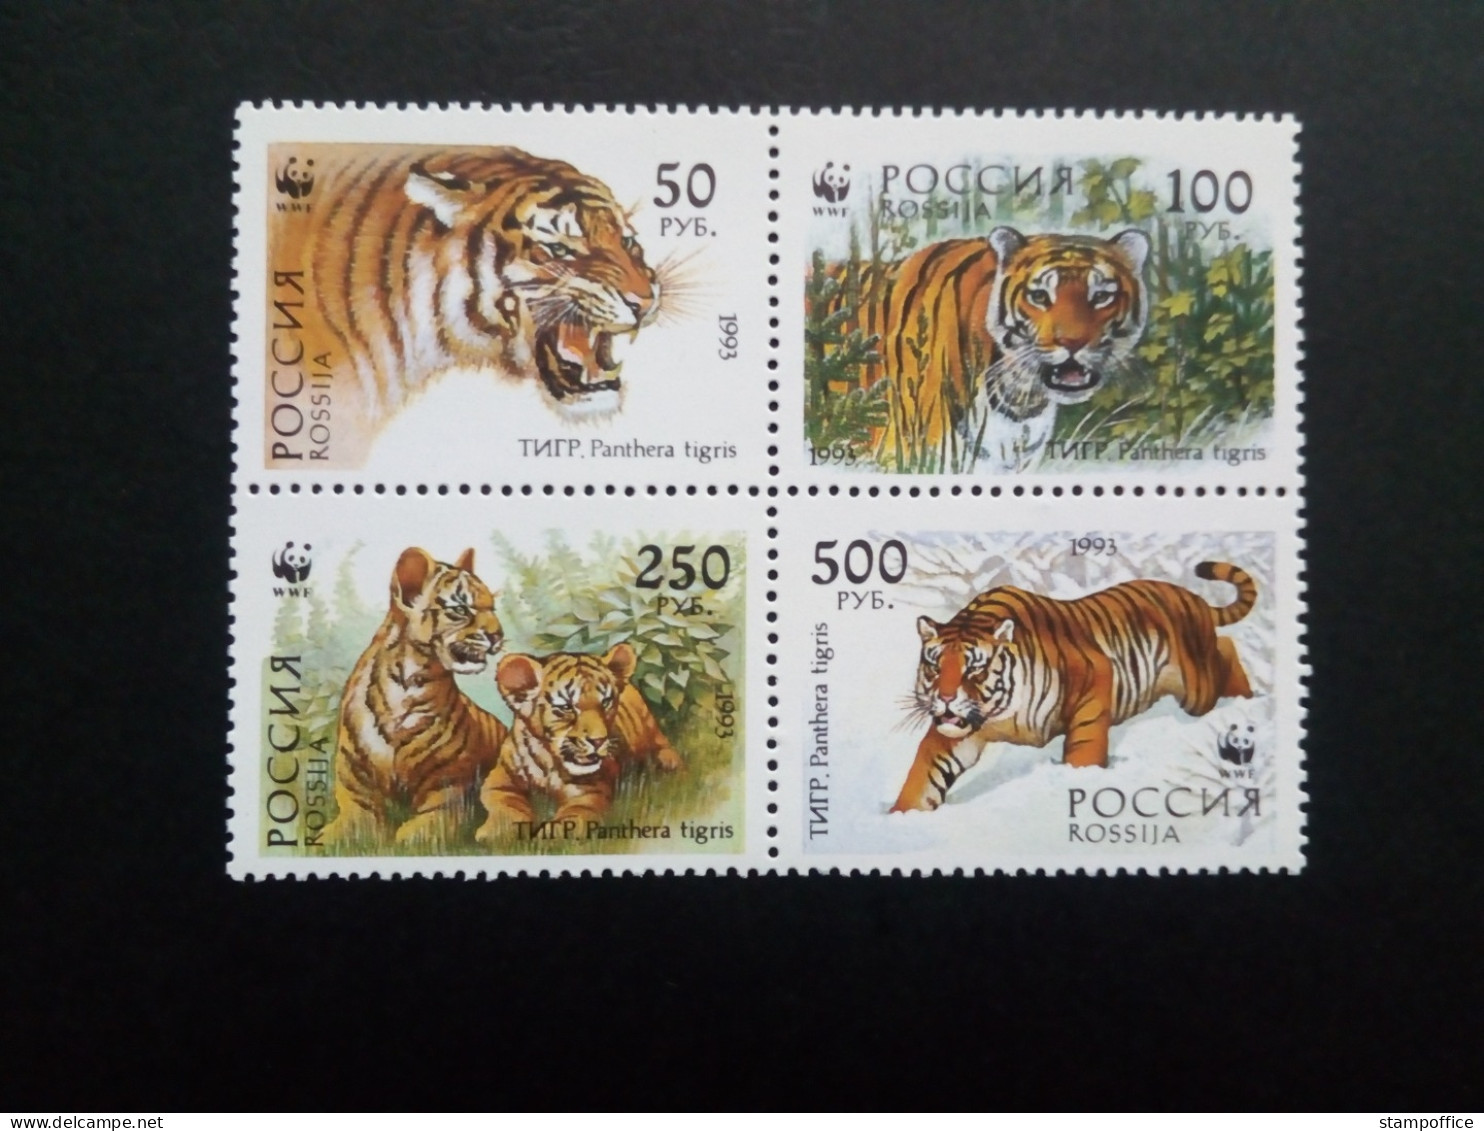 RUSSLAND MI-NR. 343-346 POSTFRISCH(MINT) SIBIRISCHER TIGER WWF 1993 - Felinos